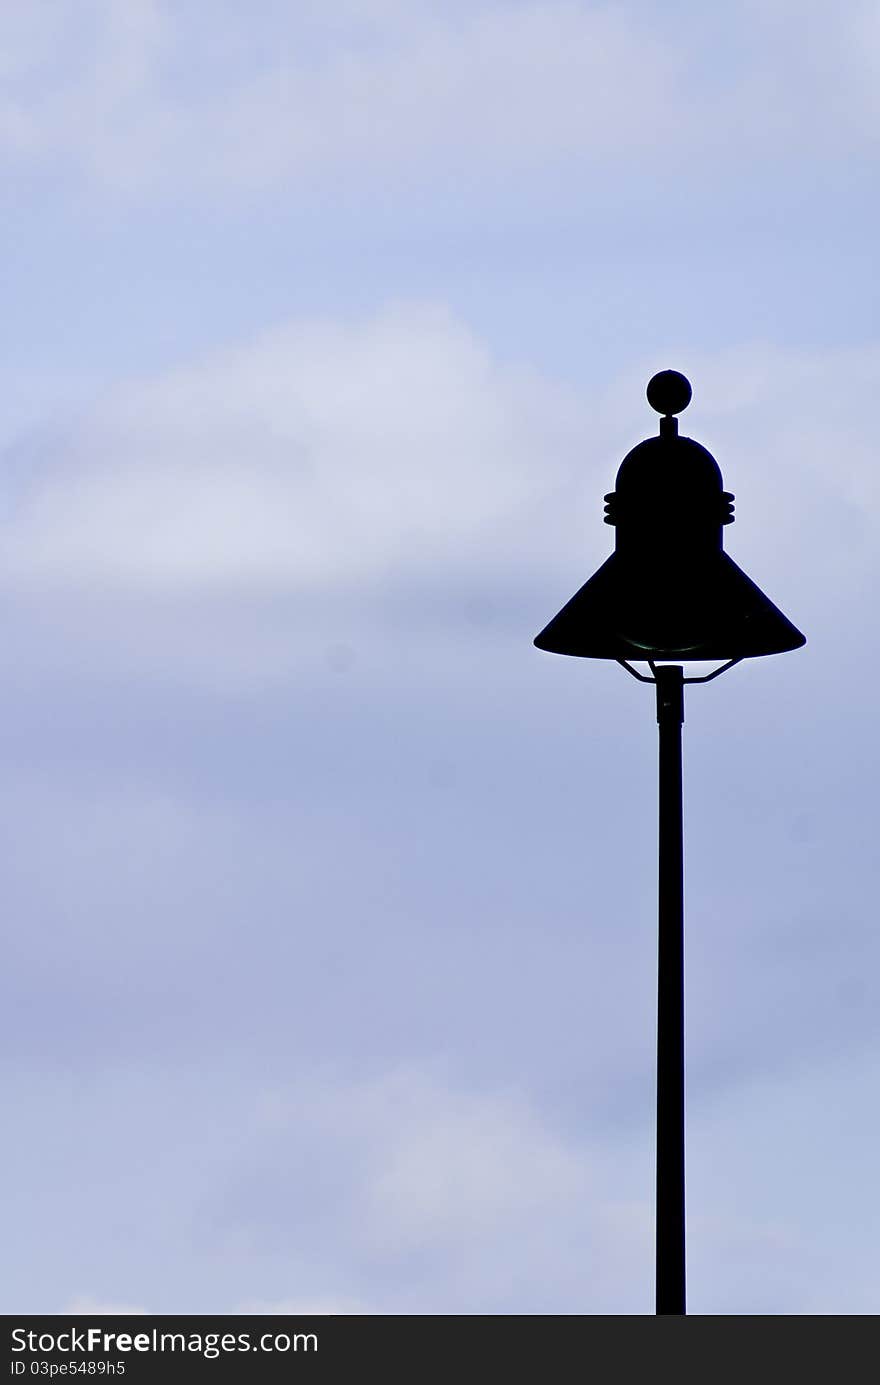 A street lamp silhouette againt a slightly overcast blue sky.